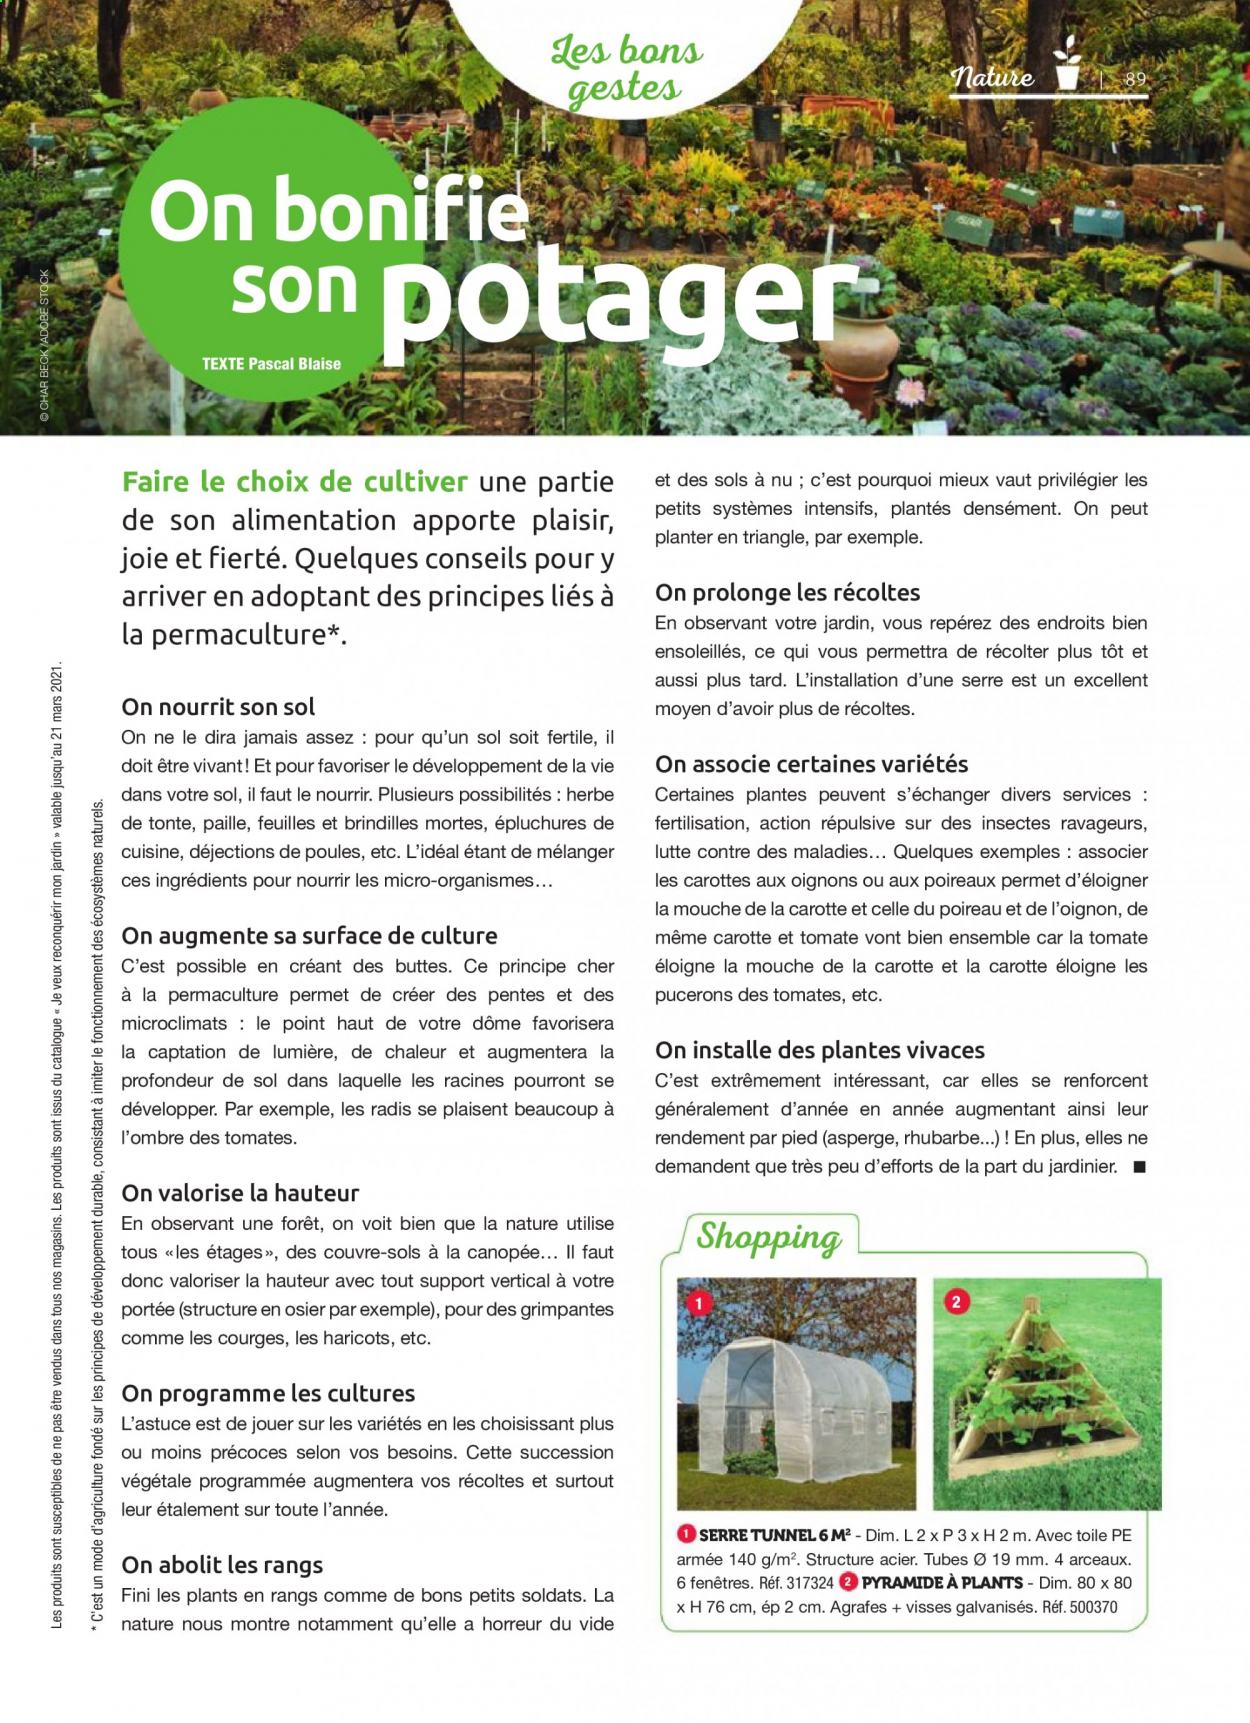 thumbnail - Catalogue Mr. Bricolage - Produits soldés - serre tunnel, rhubarbe, plantes vivaces. Page 89.